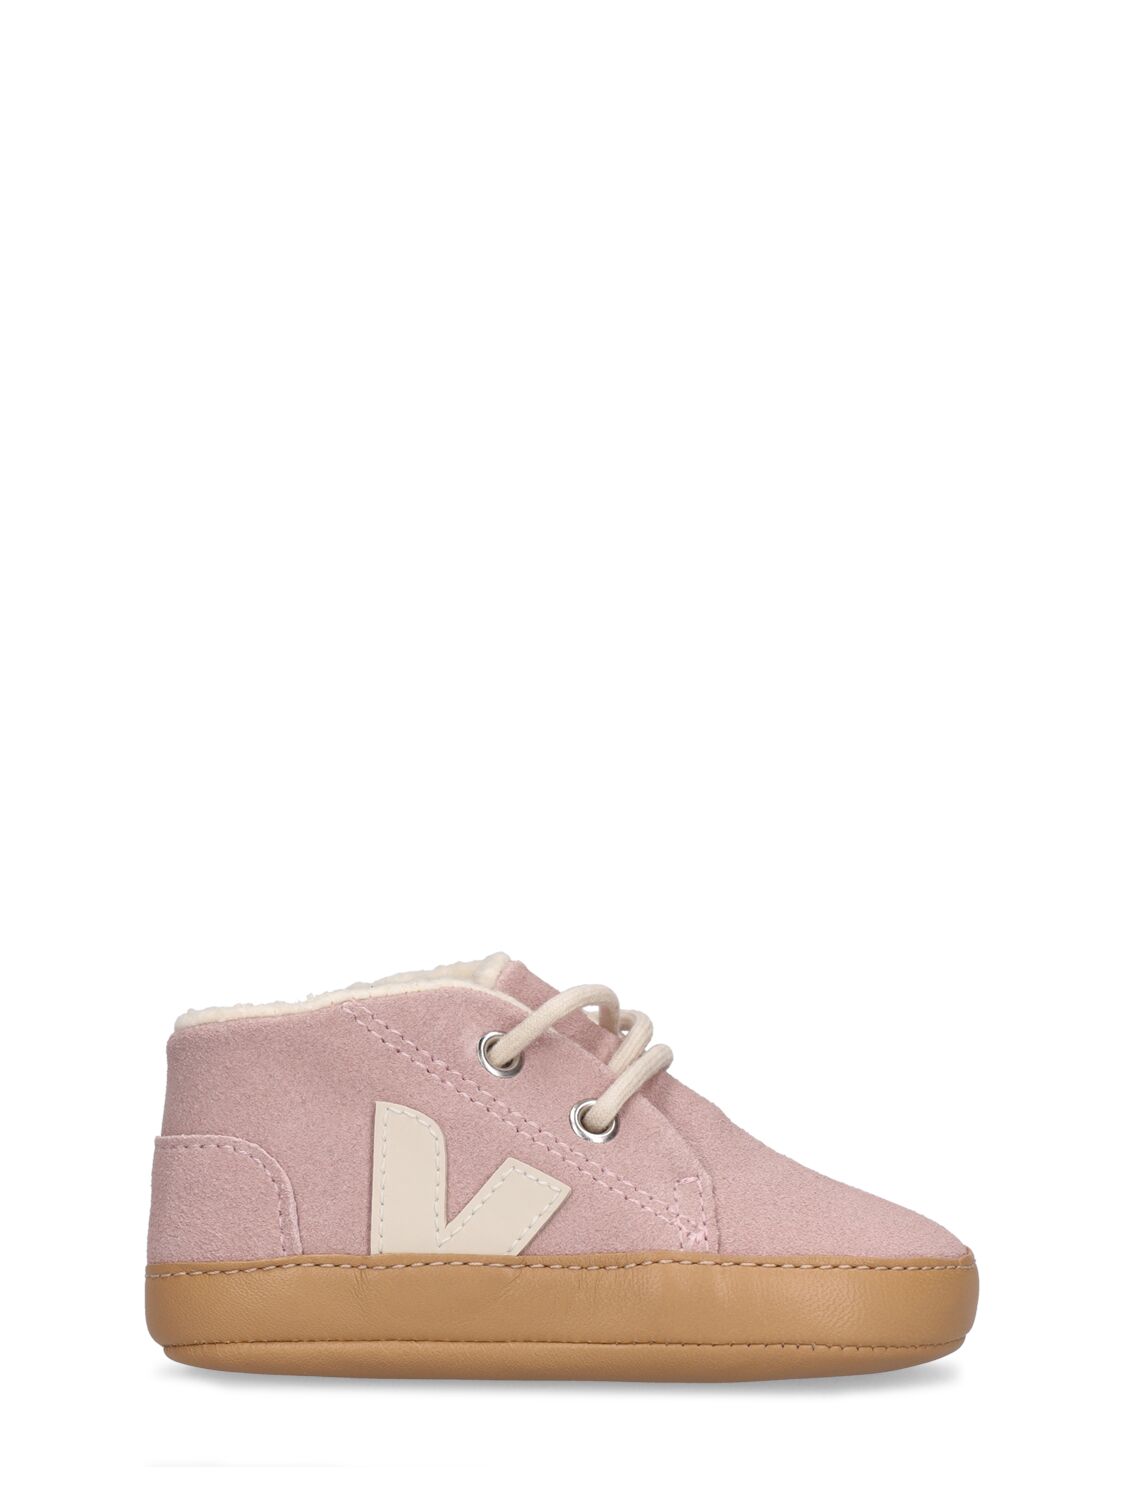 Veja Kids' Pre-walker Shoes In Pink